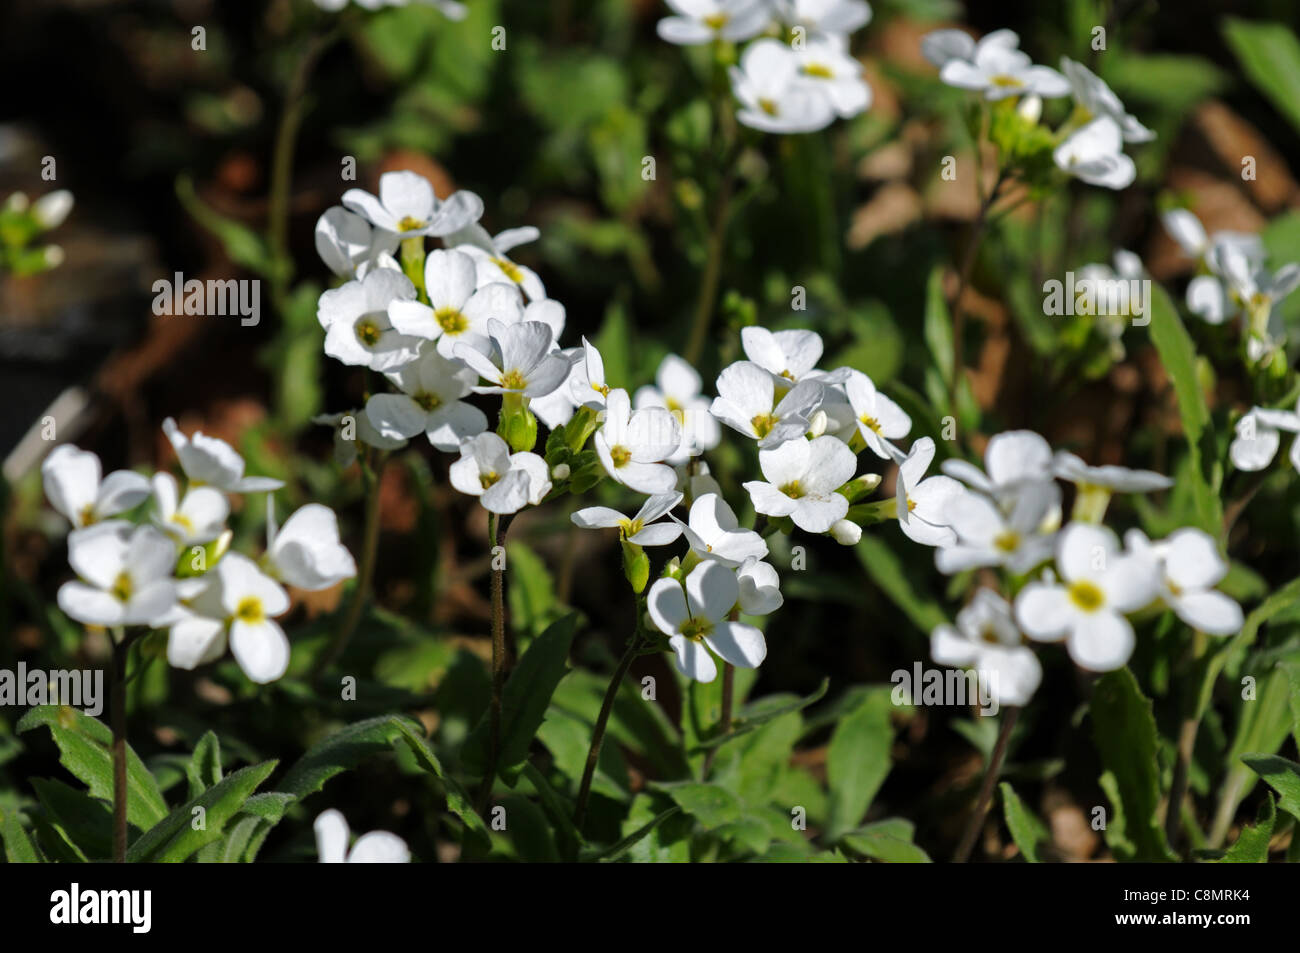 Arabis Sicula mehrjährige krautige Pflanze weiße Blumen Blüte Blüten  zierlich kleine Feder Stockfotografie - Alamy